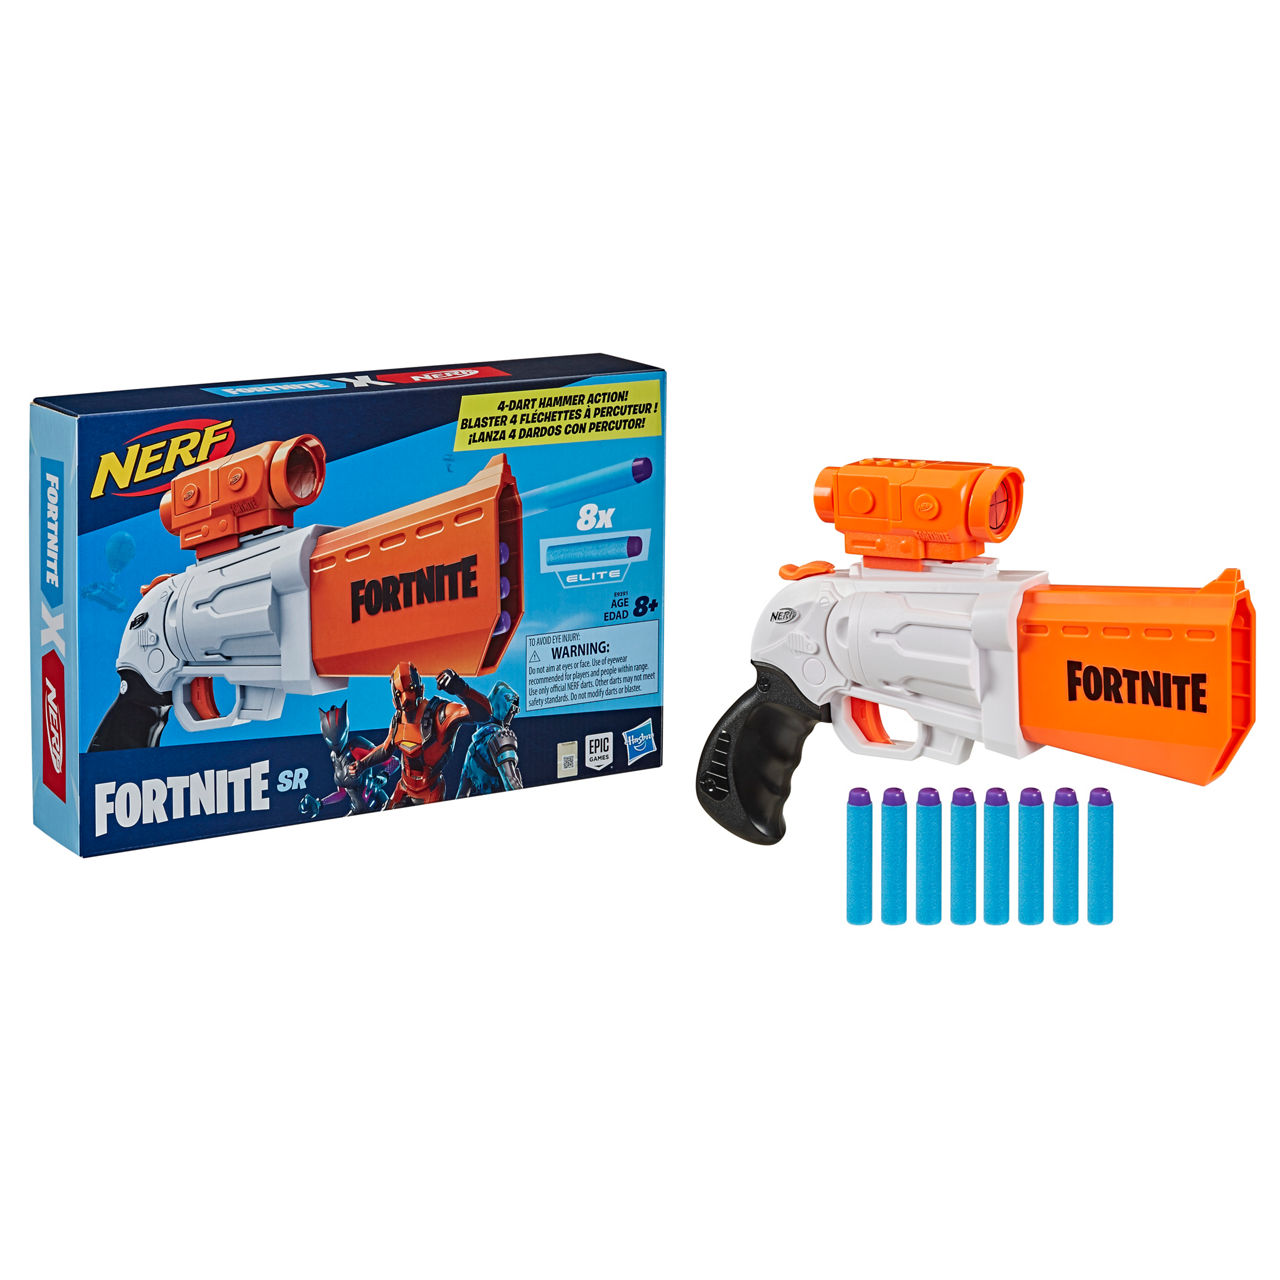 Hasbro HSBF0928 Nerf Fortnite Heavy SR Blasted Toys - Pack of 4, 1